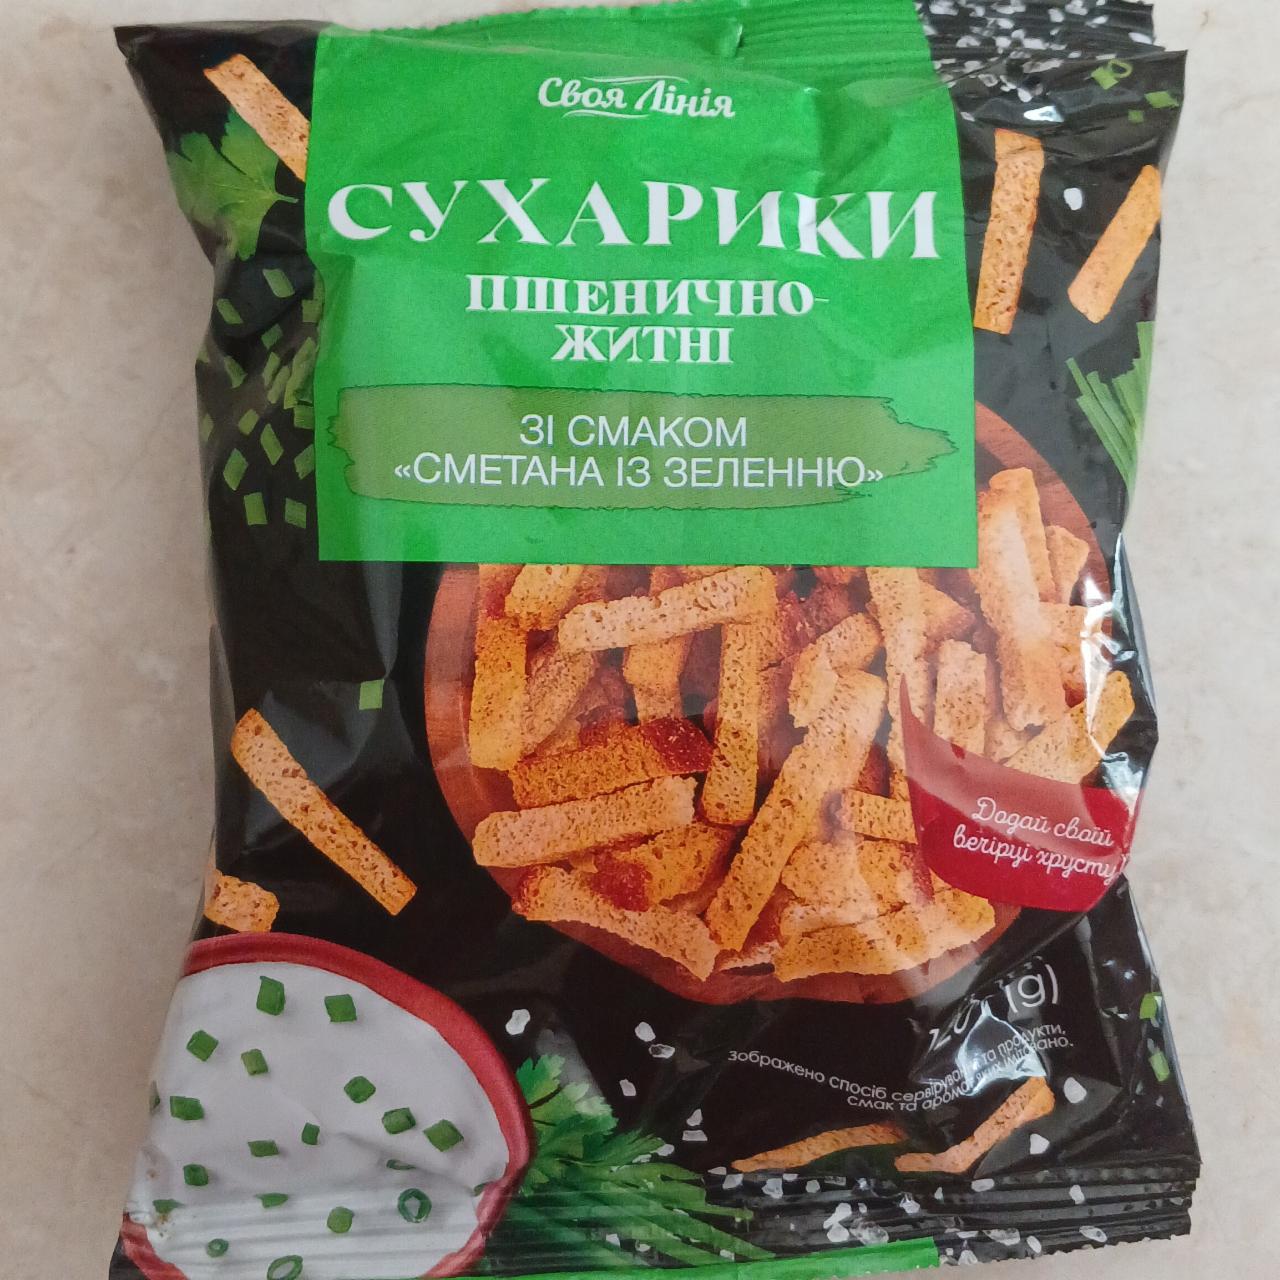 Фото - Сухарики пшенично-ржаные со вкусом сметана с зеленью Своя Линия